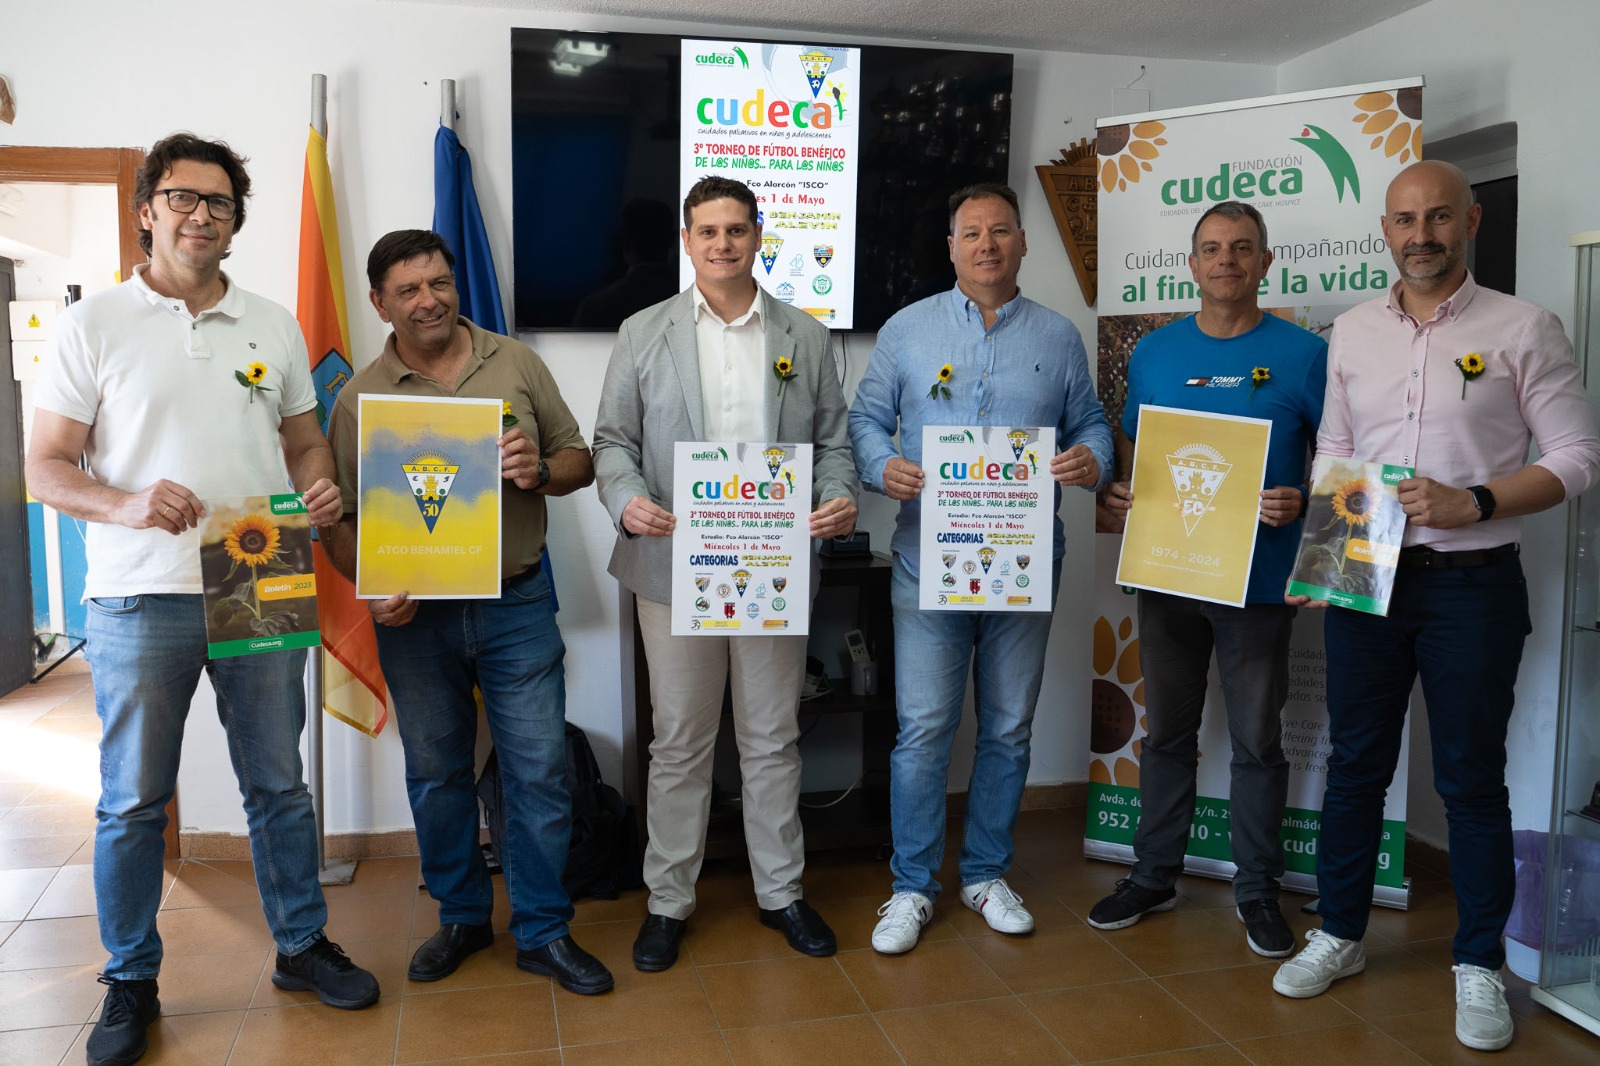 Presentado el torneo de fútbol solidario por Cudeca